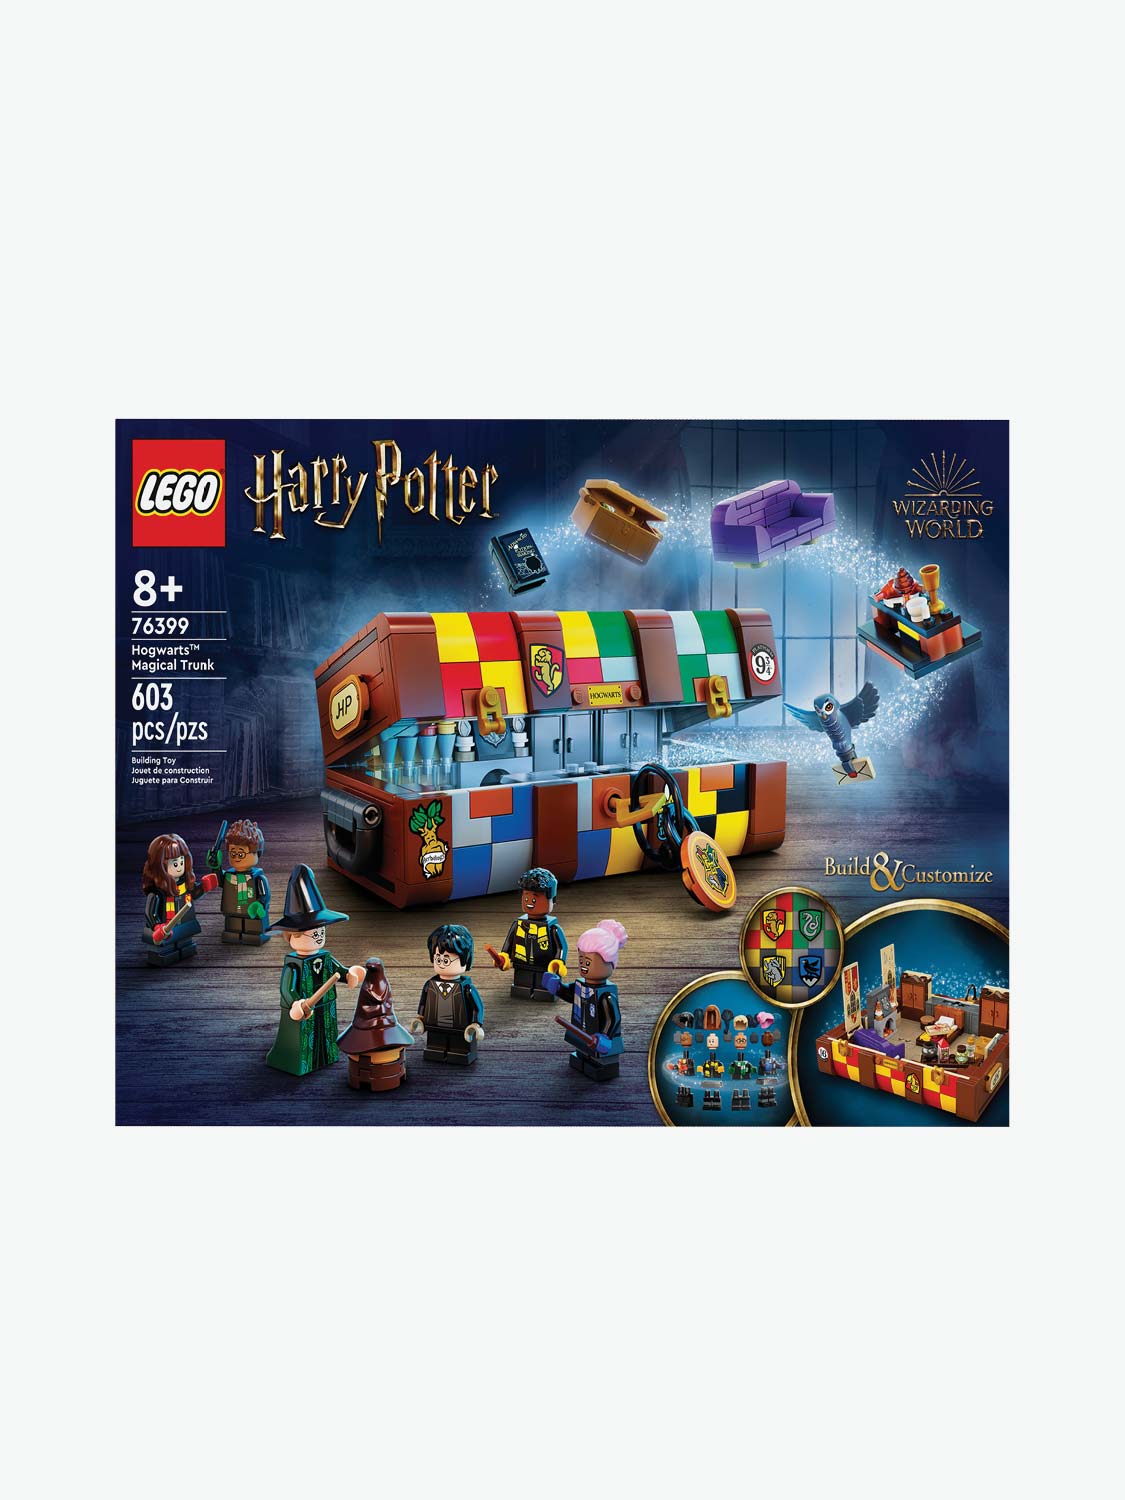 Buy 76399 LEGO® HARRY POTTER™ Hogwarts™ Magic Case